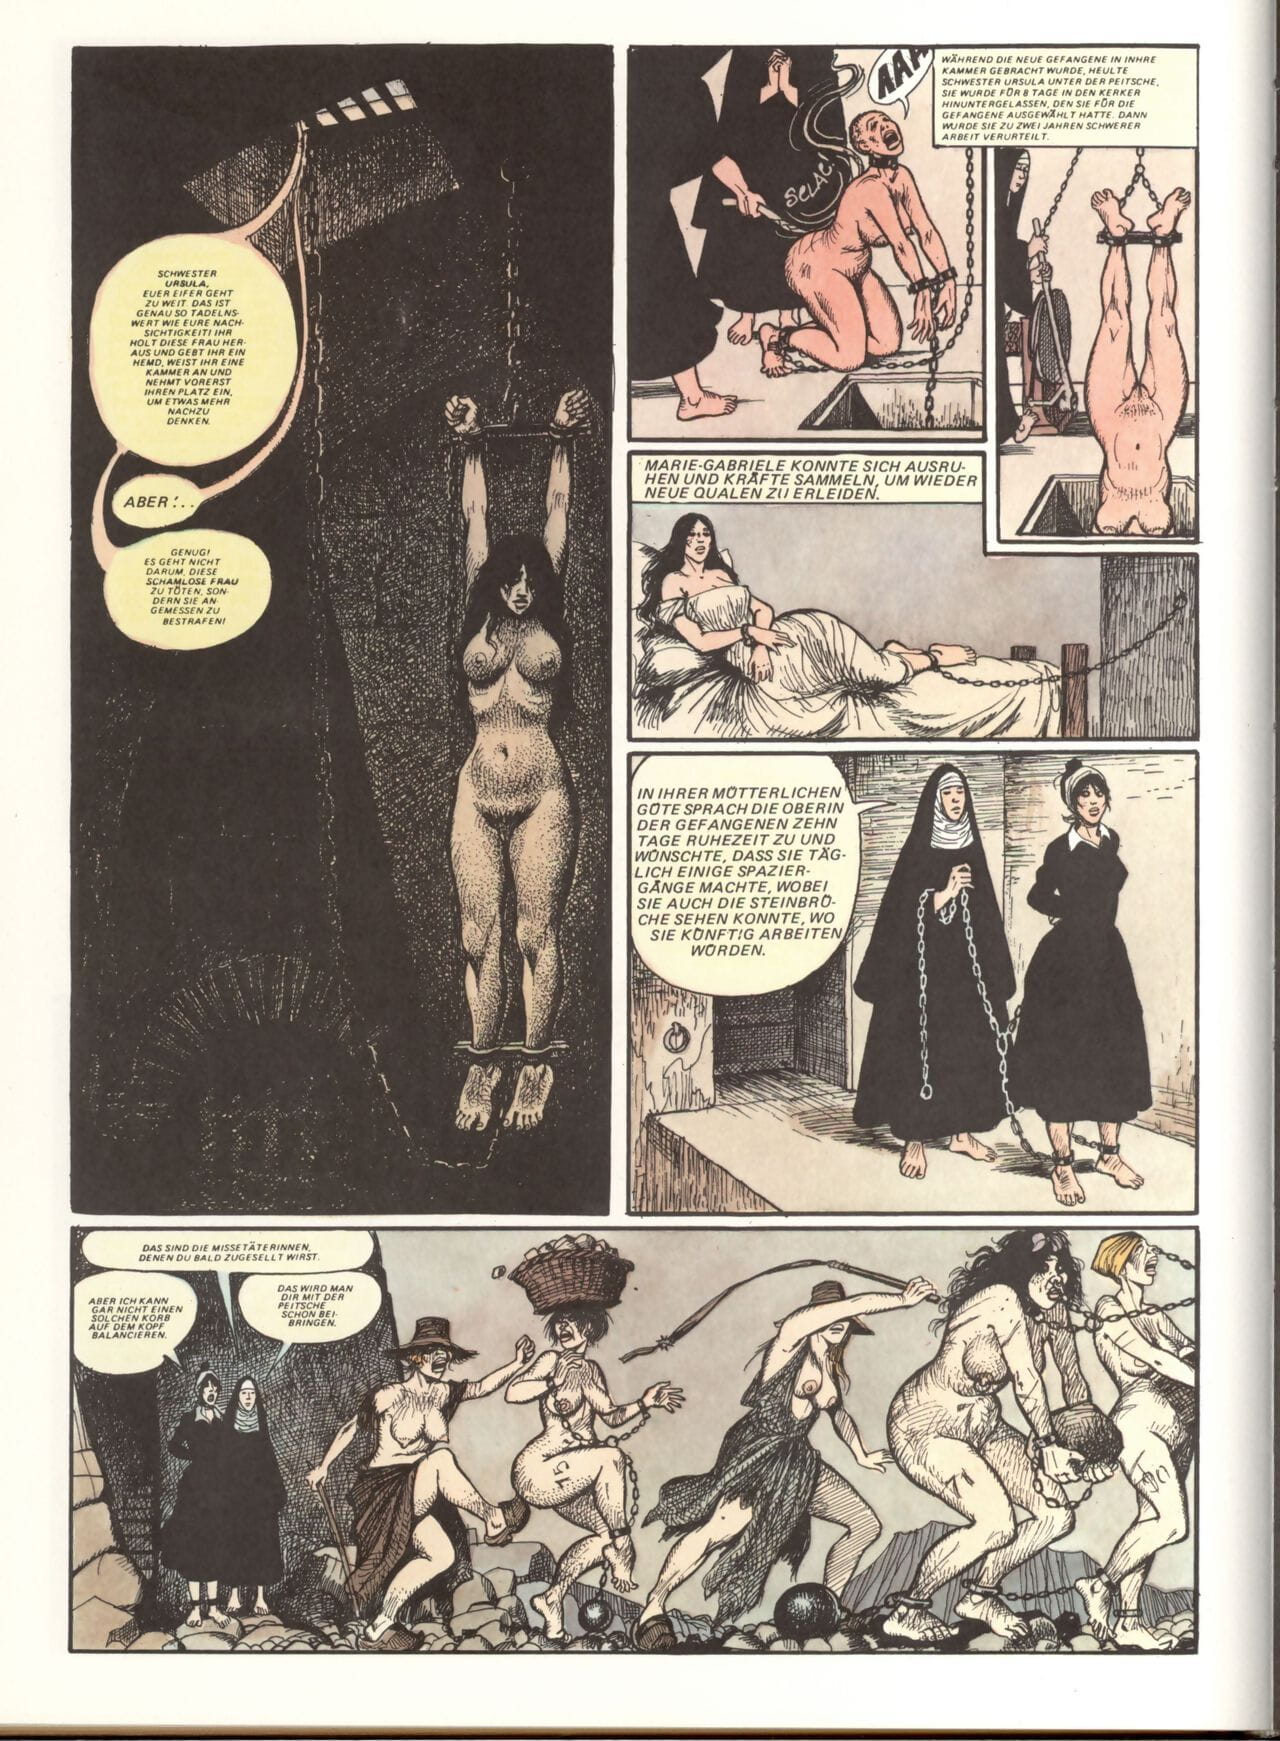 Marie Gabrielle de Saint eutropo #02 parte 3 page 1